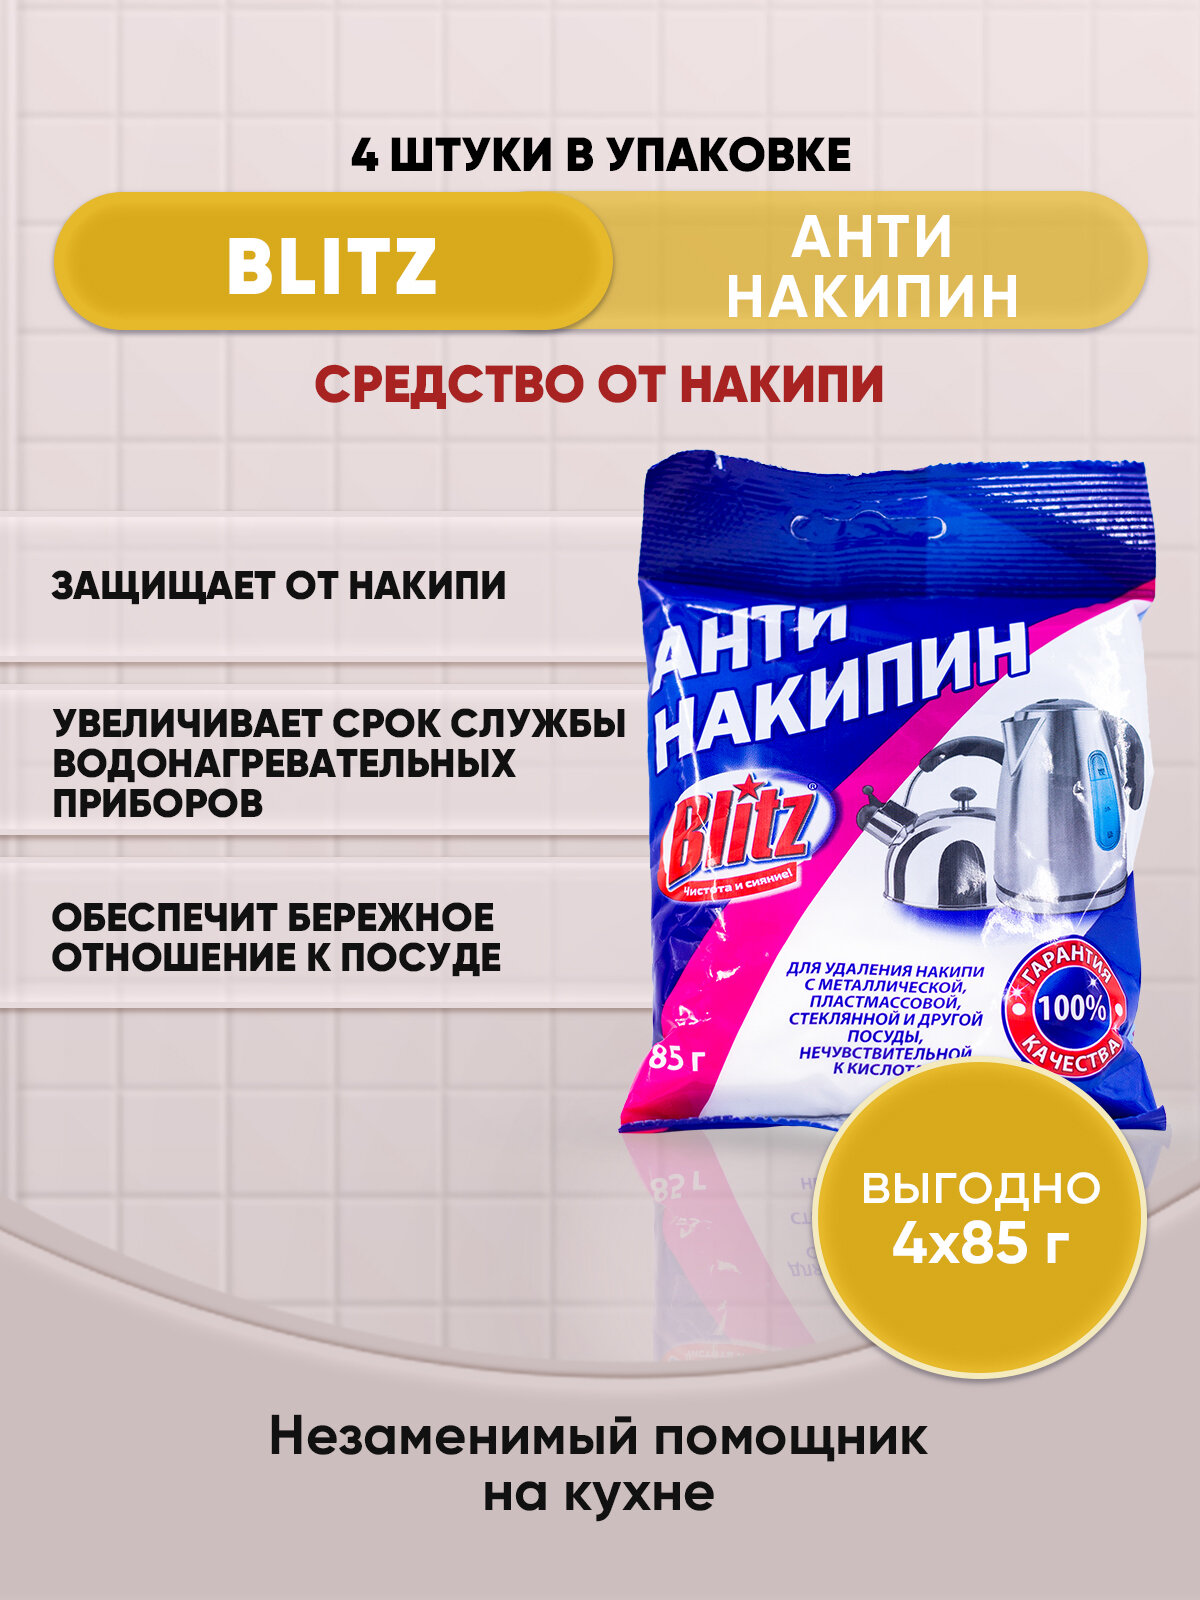 BLITZ Антинакипин средство от накипи 85г/4шт